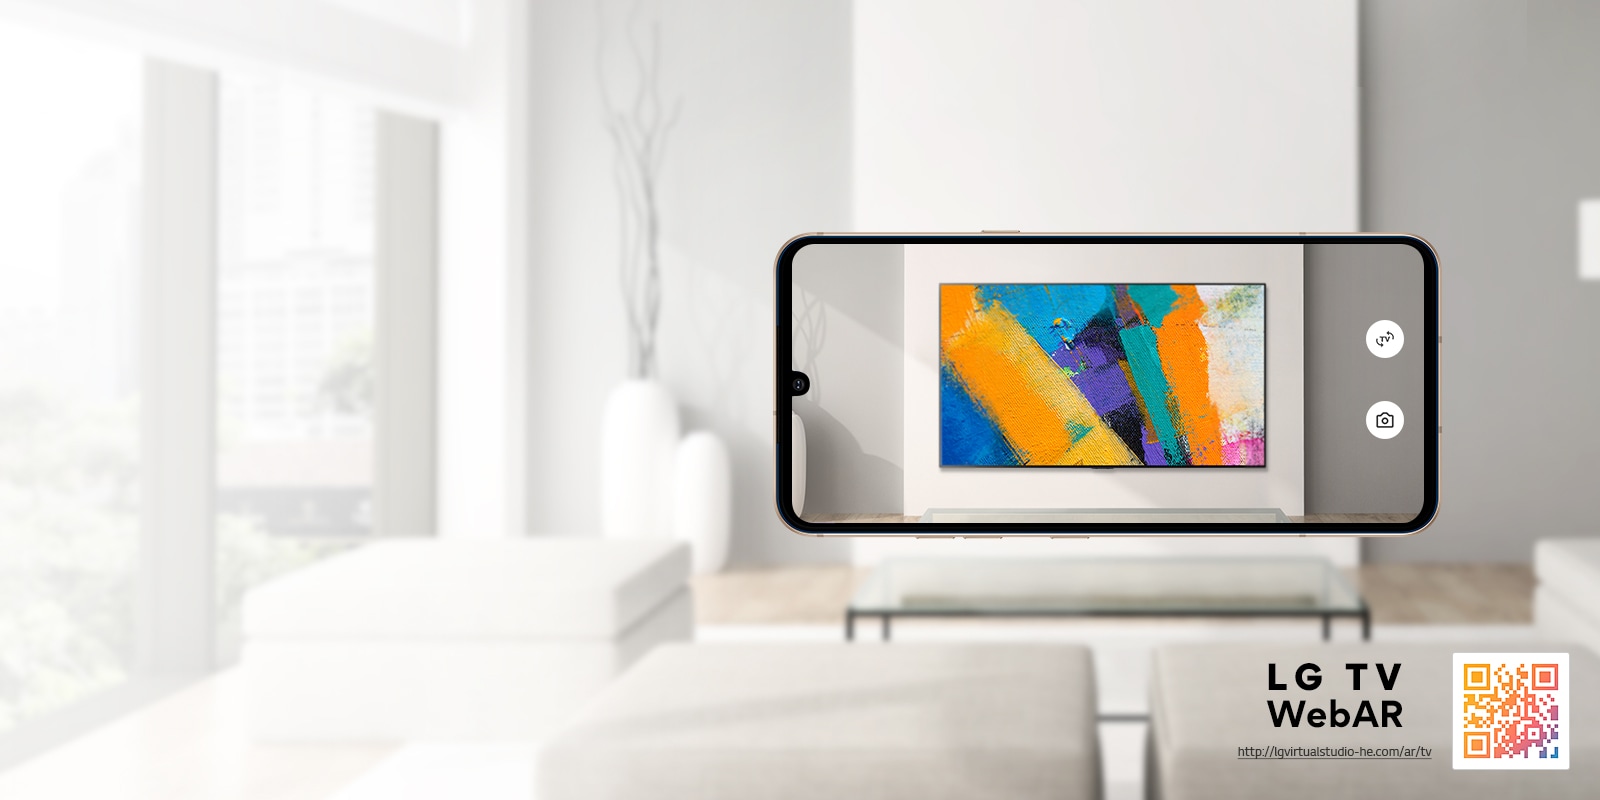 To jest symulacja Web AR obrazu telewizora LG OLED. Obrazy telefonów komórkowych nałożone na minimalistyczną przestrzeń. W dolnym prawym rogu znajduje się kod QR.